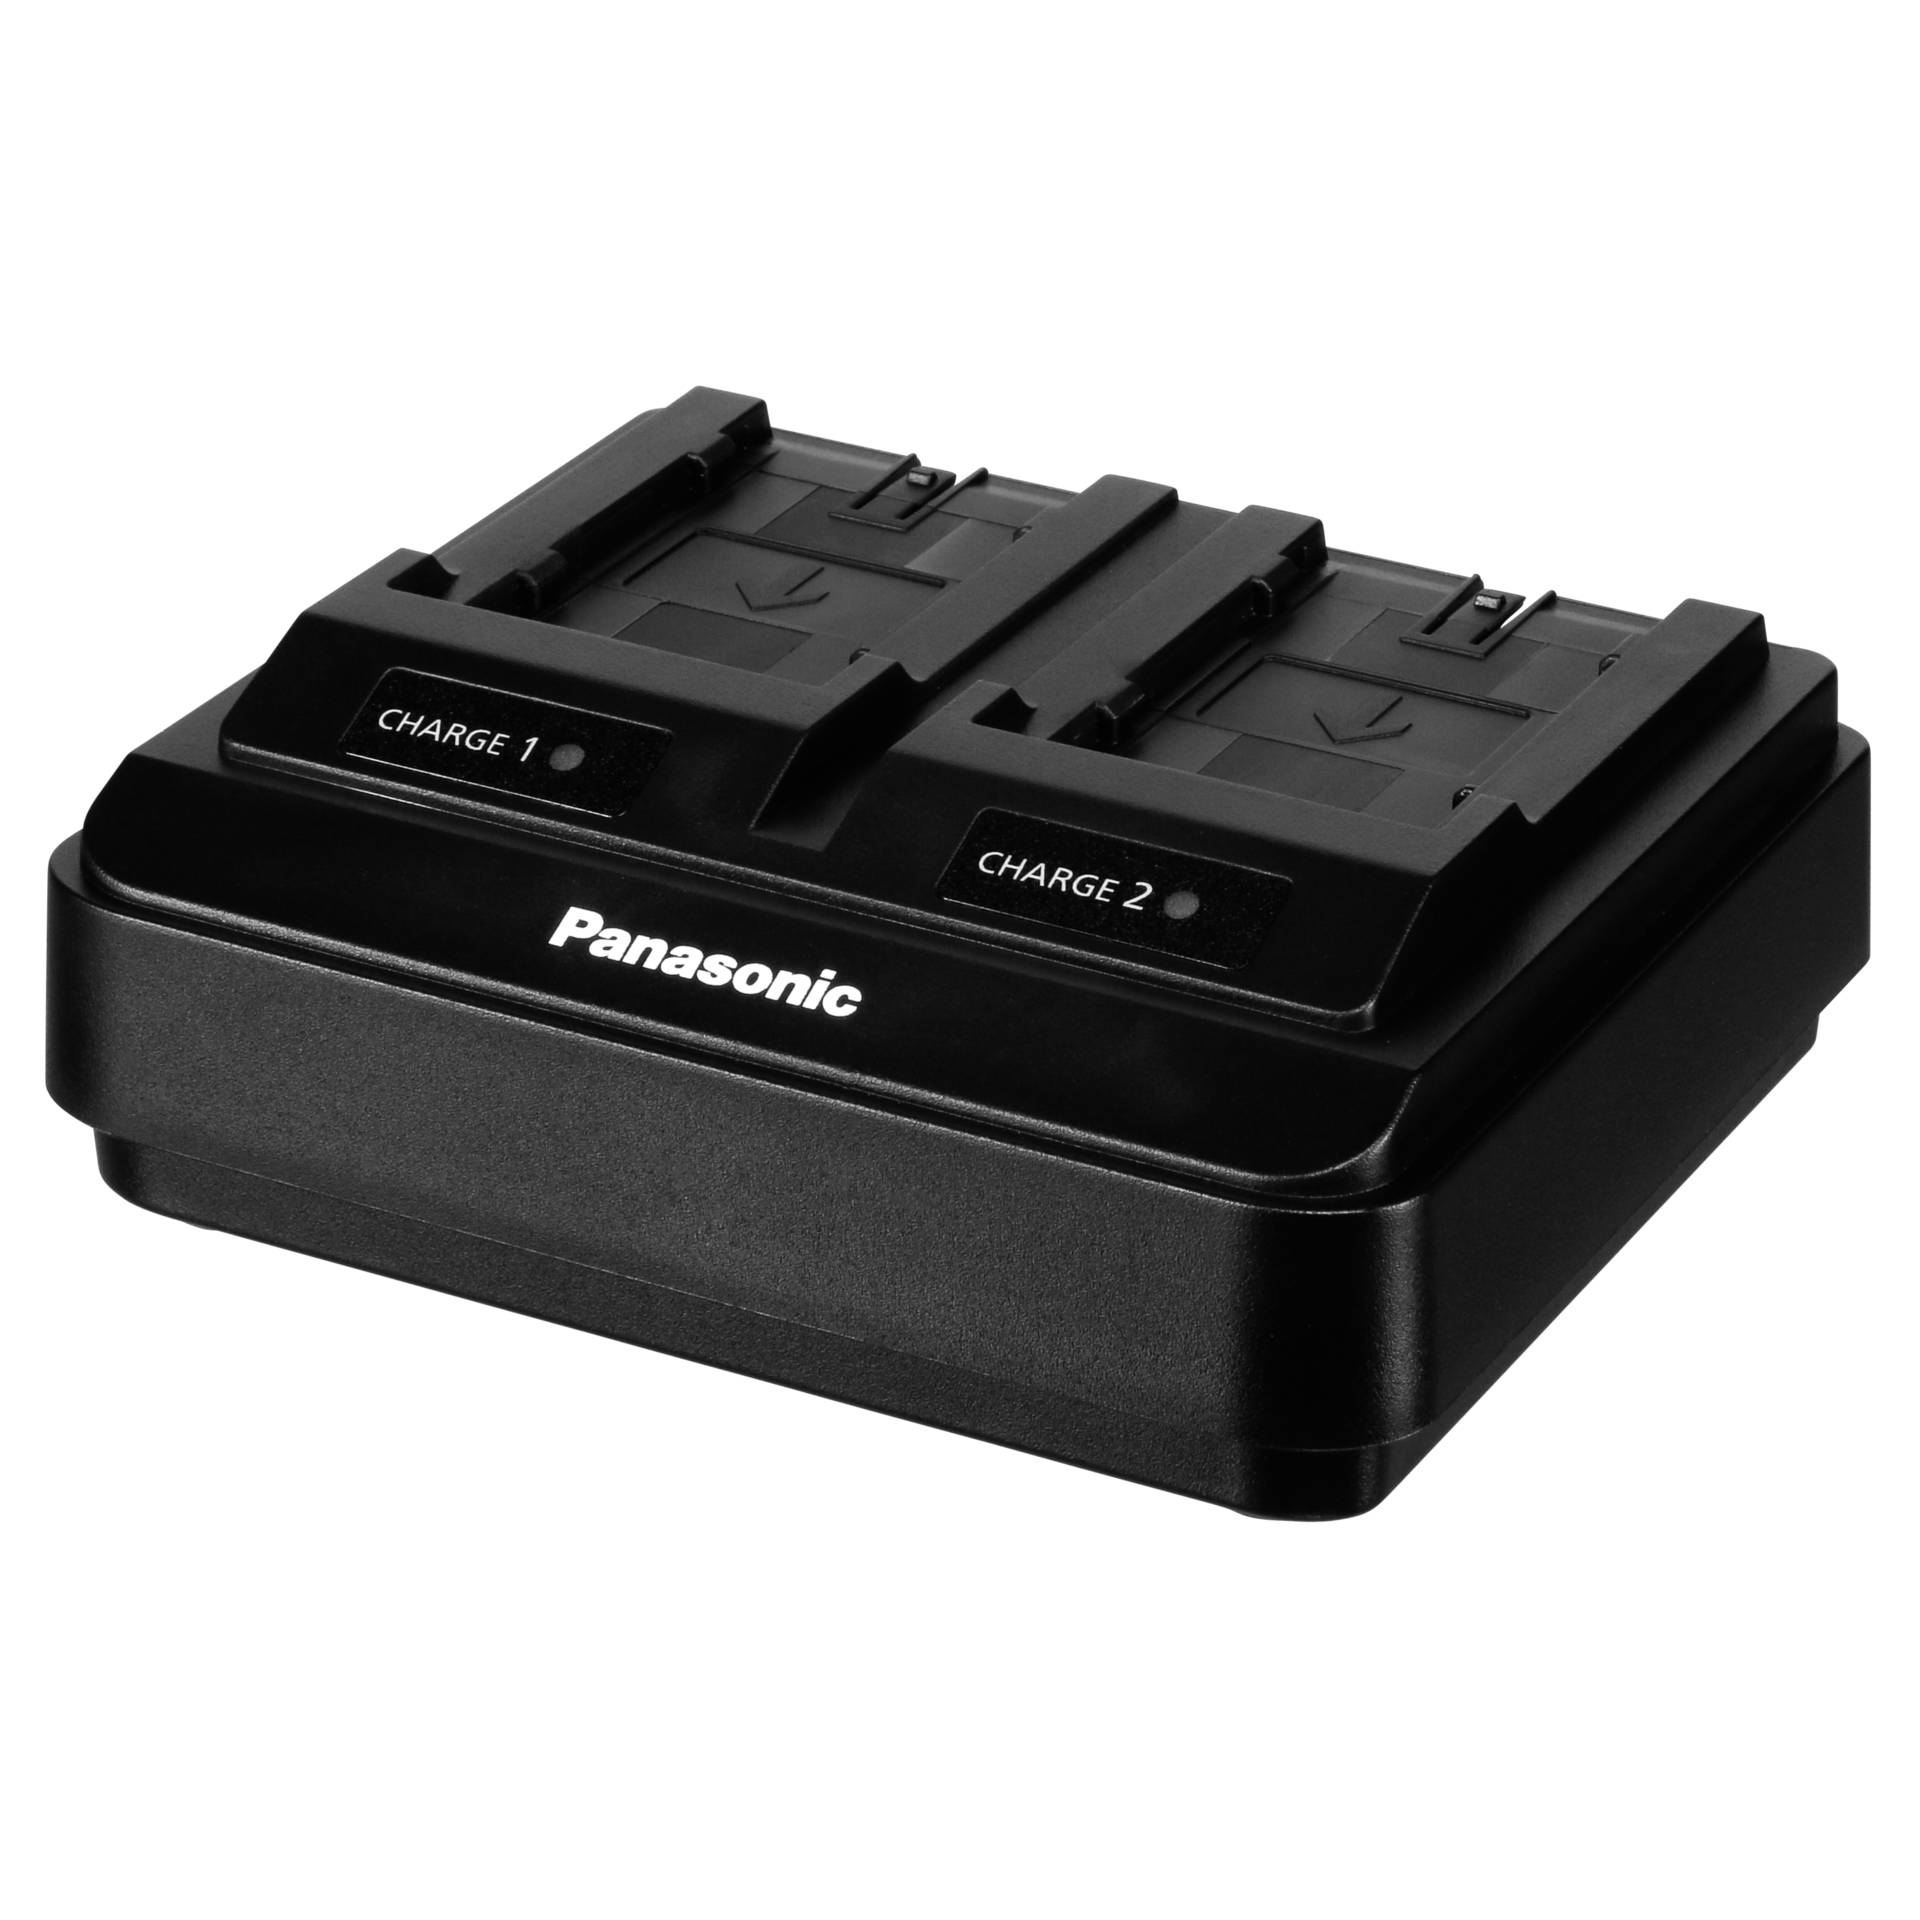 Panasonic AG-BRD50E batt. caricabatterie per AG-VBR Serie